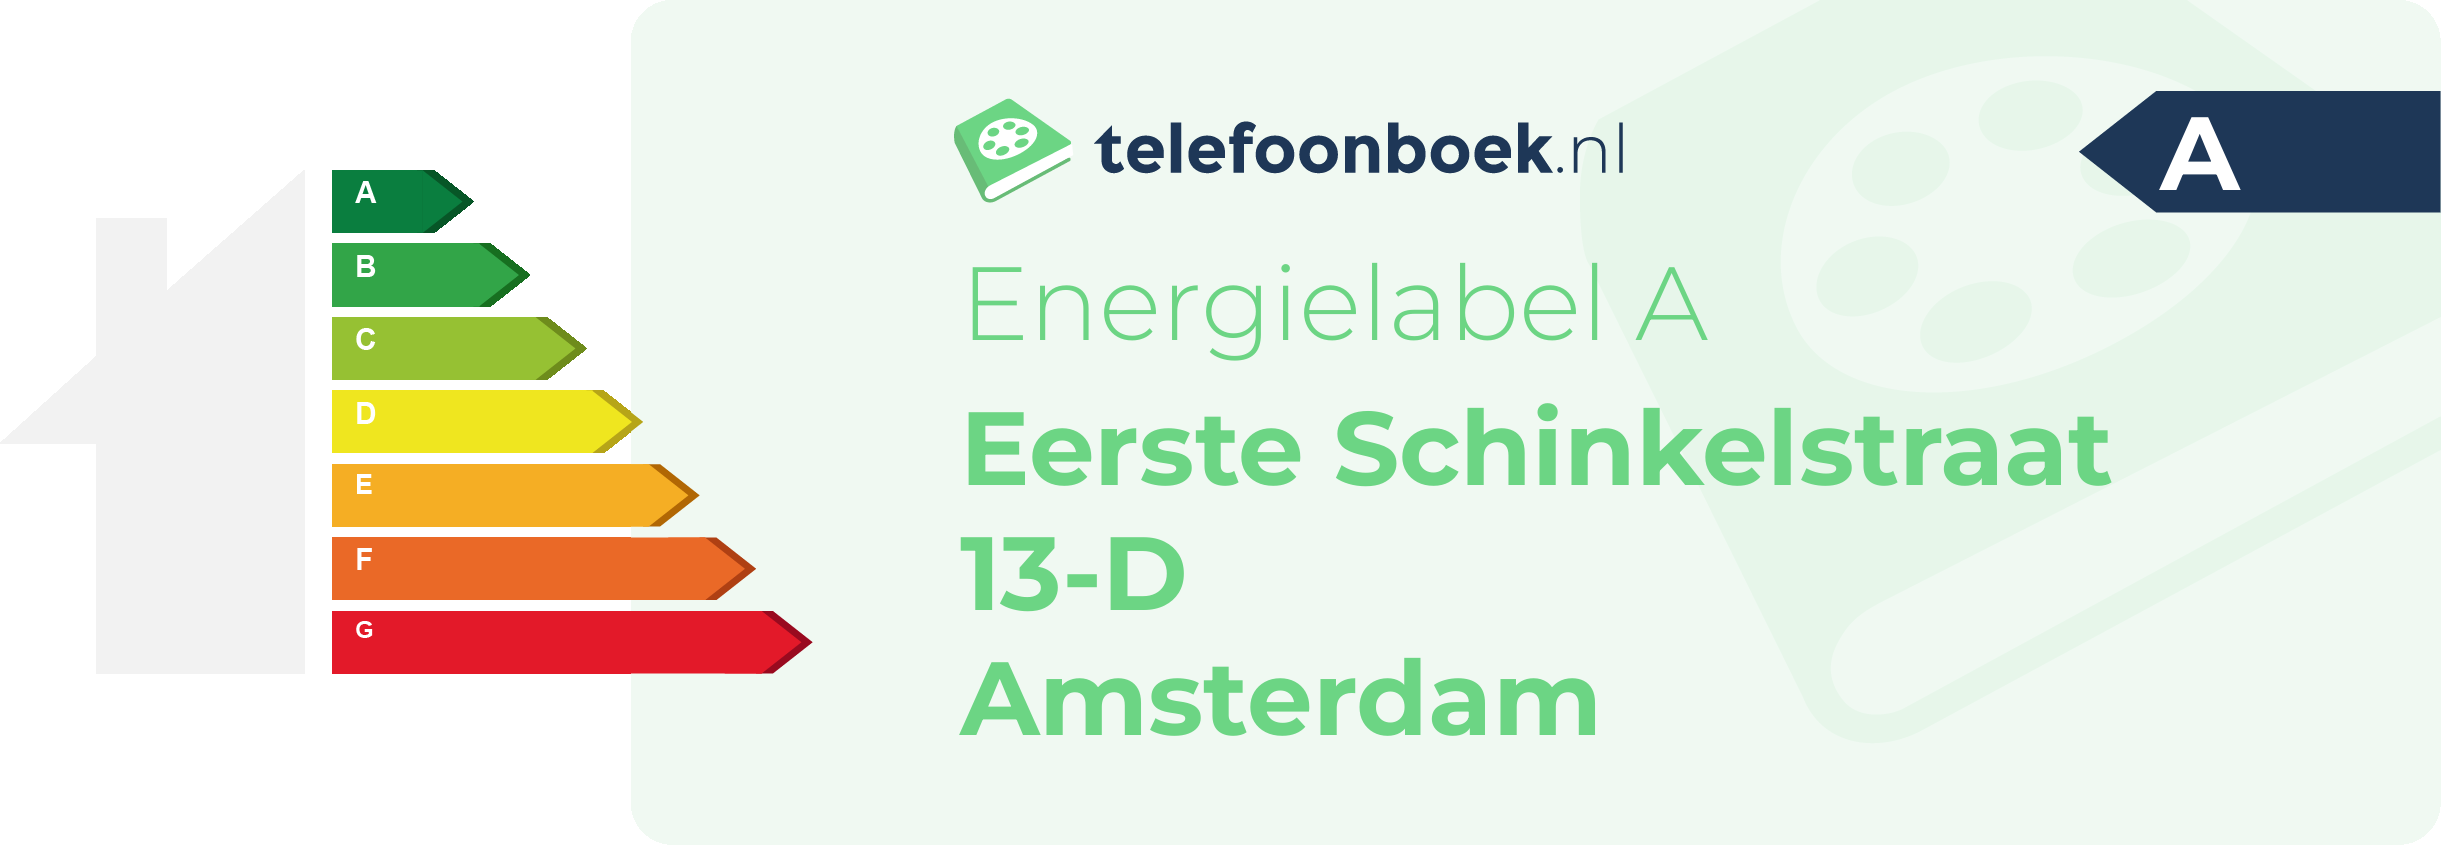 Energielabel Eerste Schinkelstraat 13-D Amsterdam